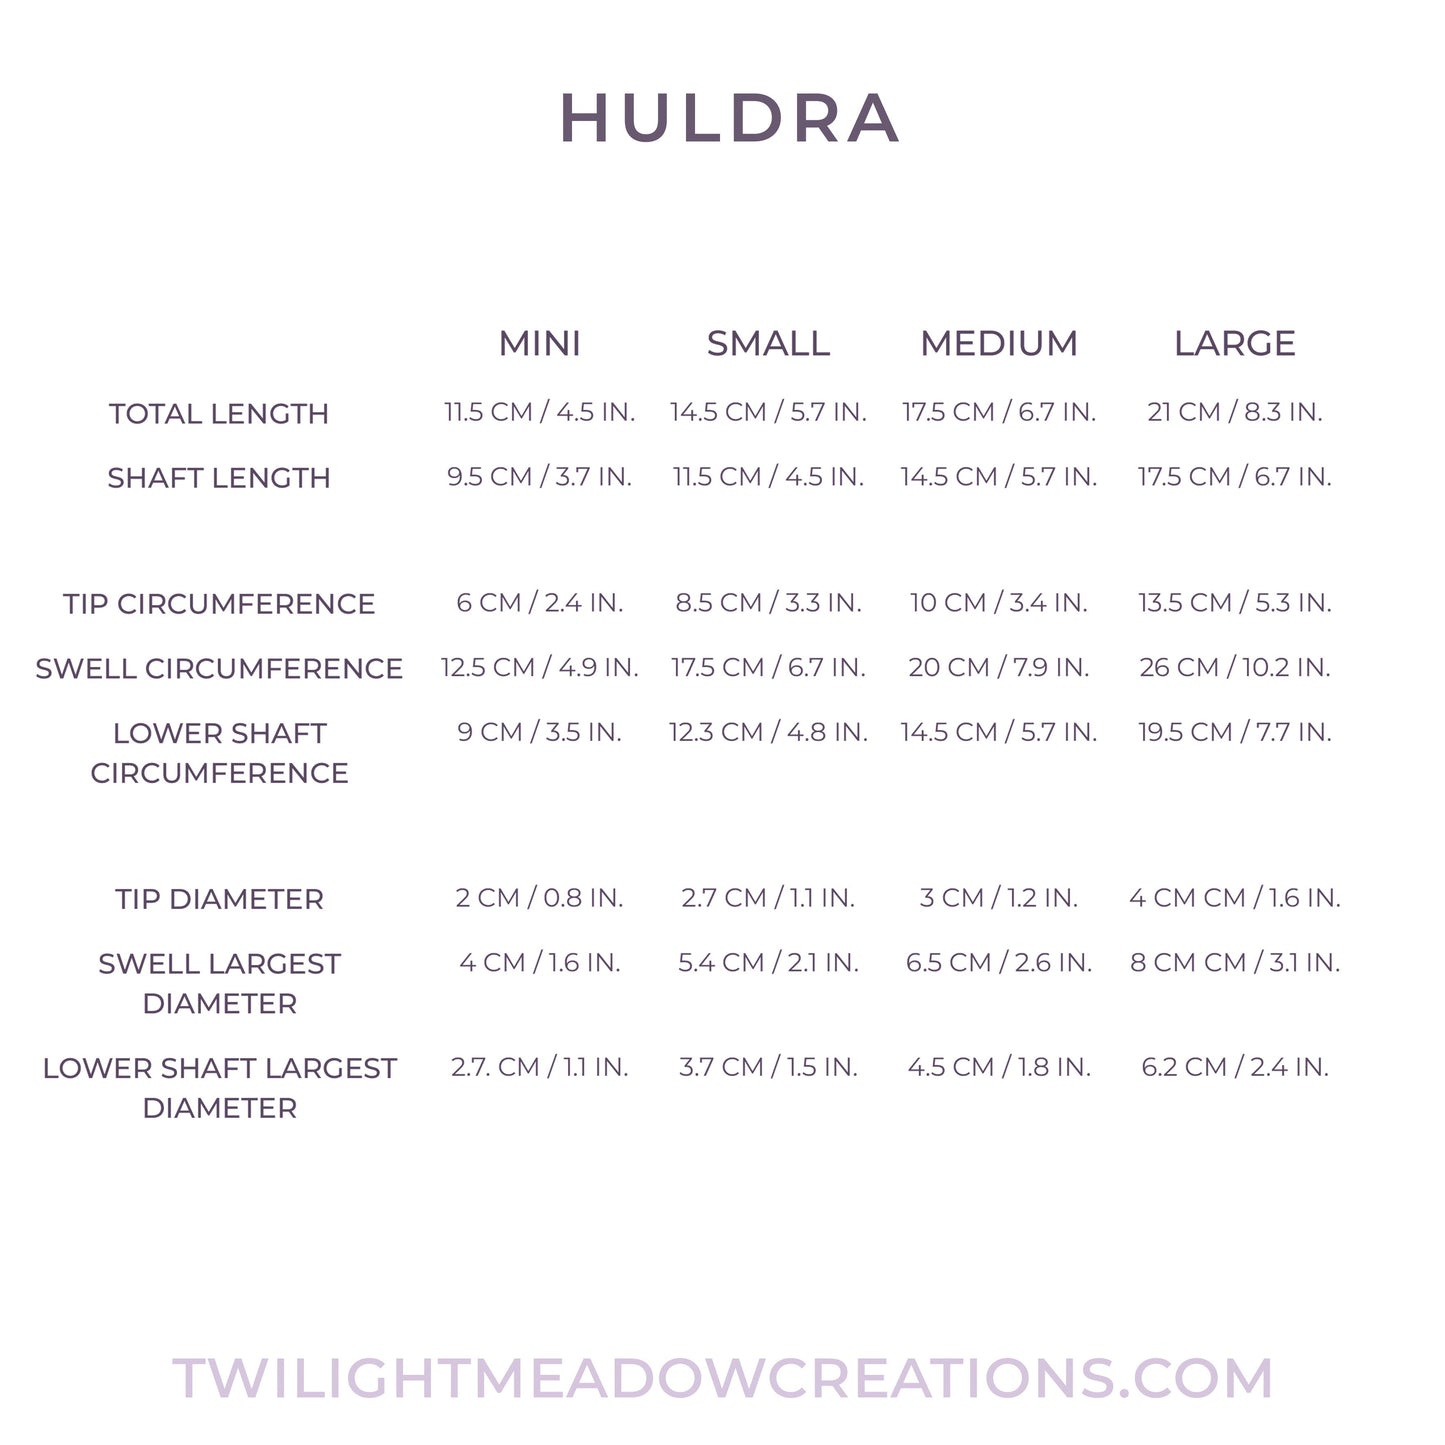 Mini Huldra (Firmness: Soft)